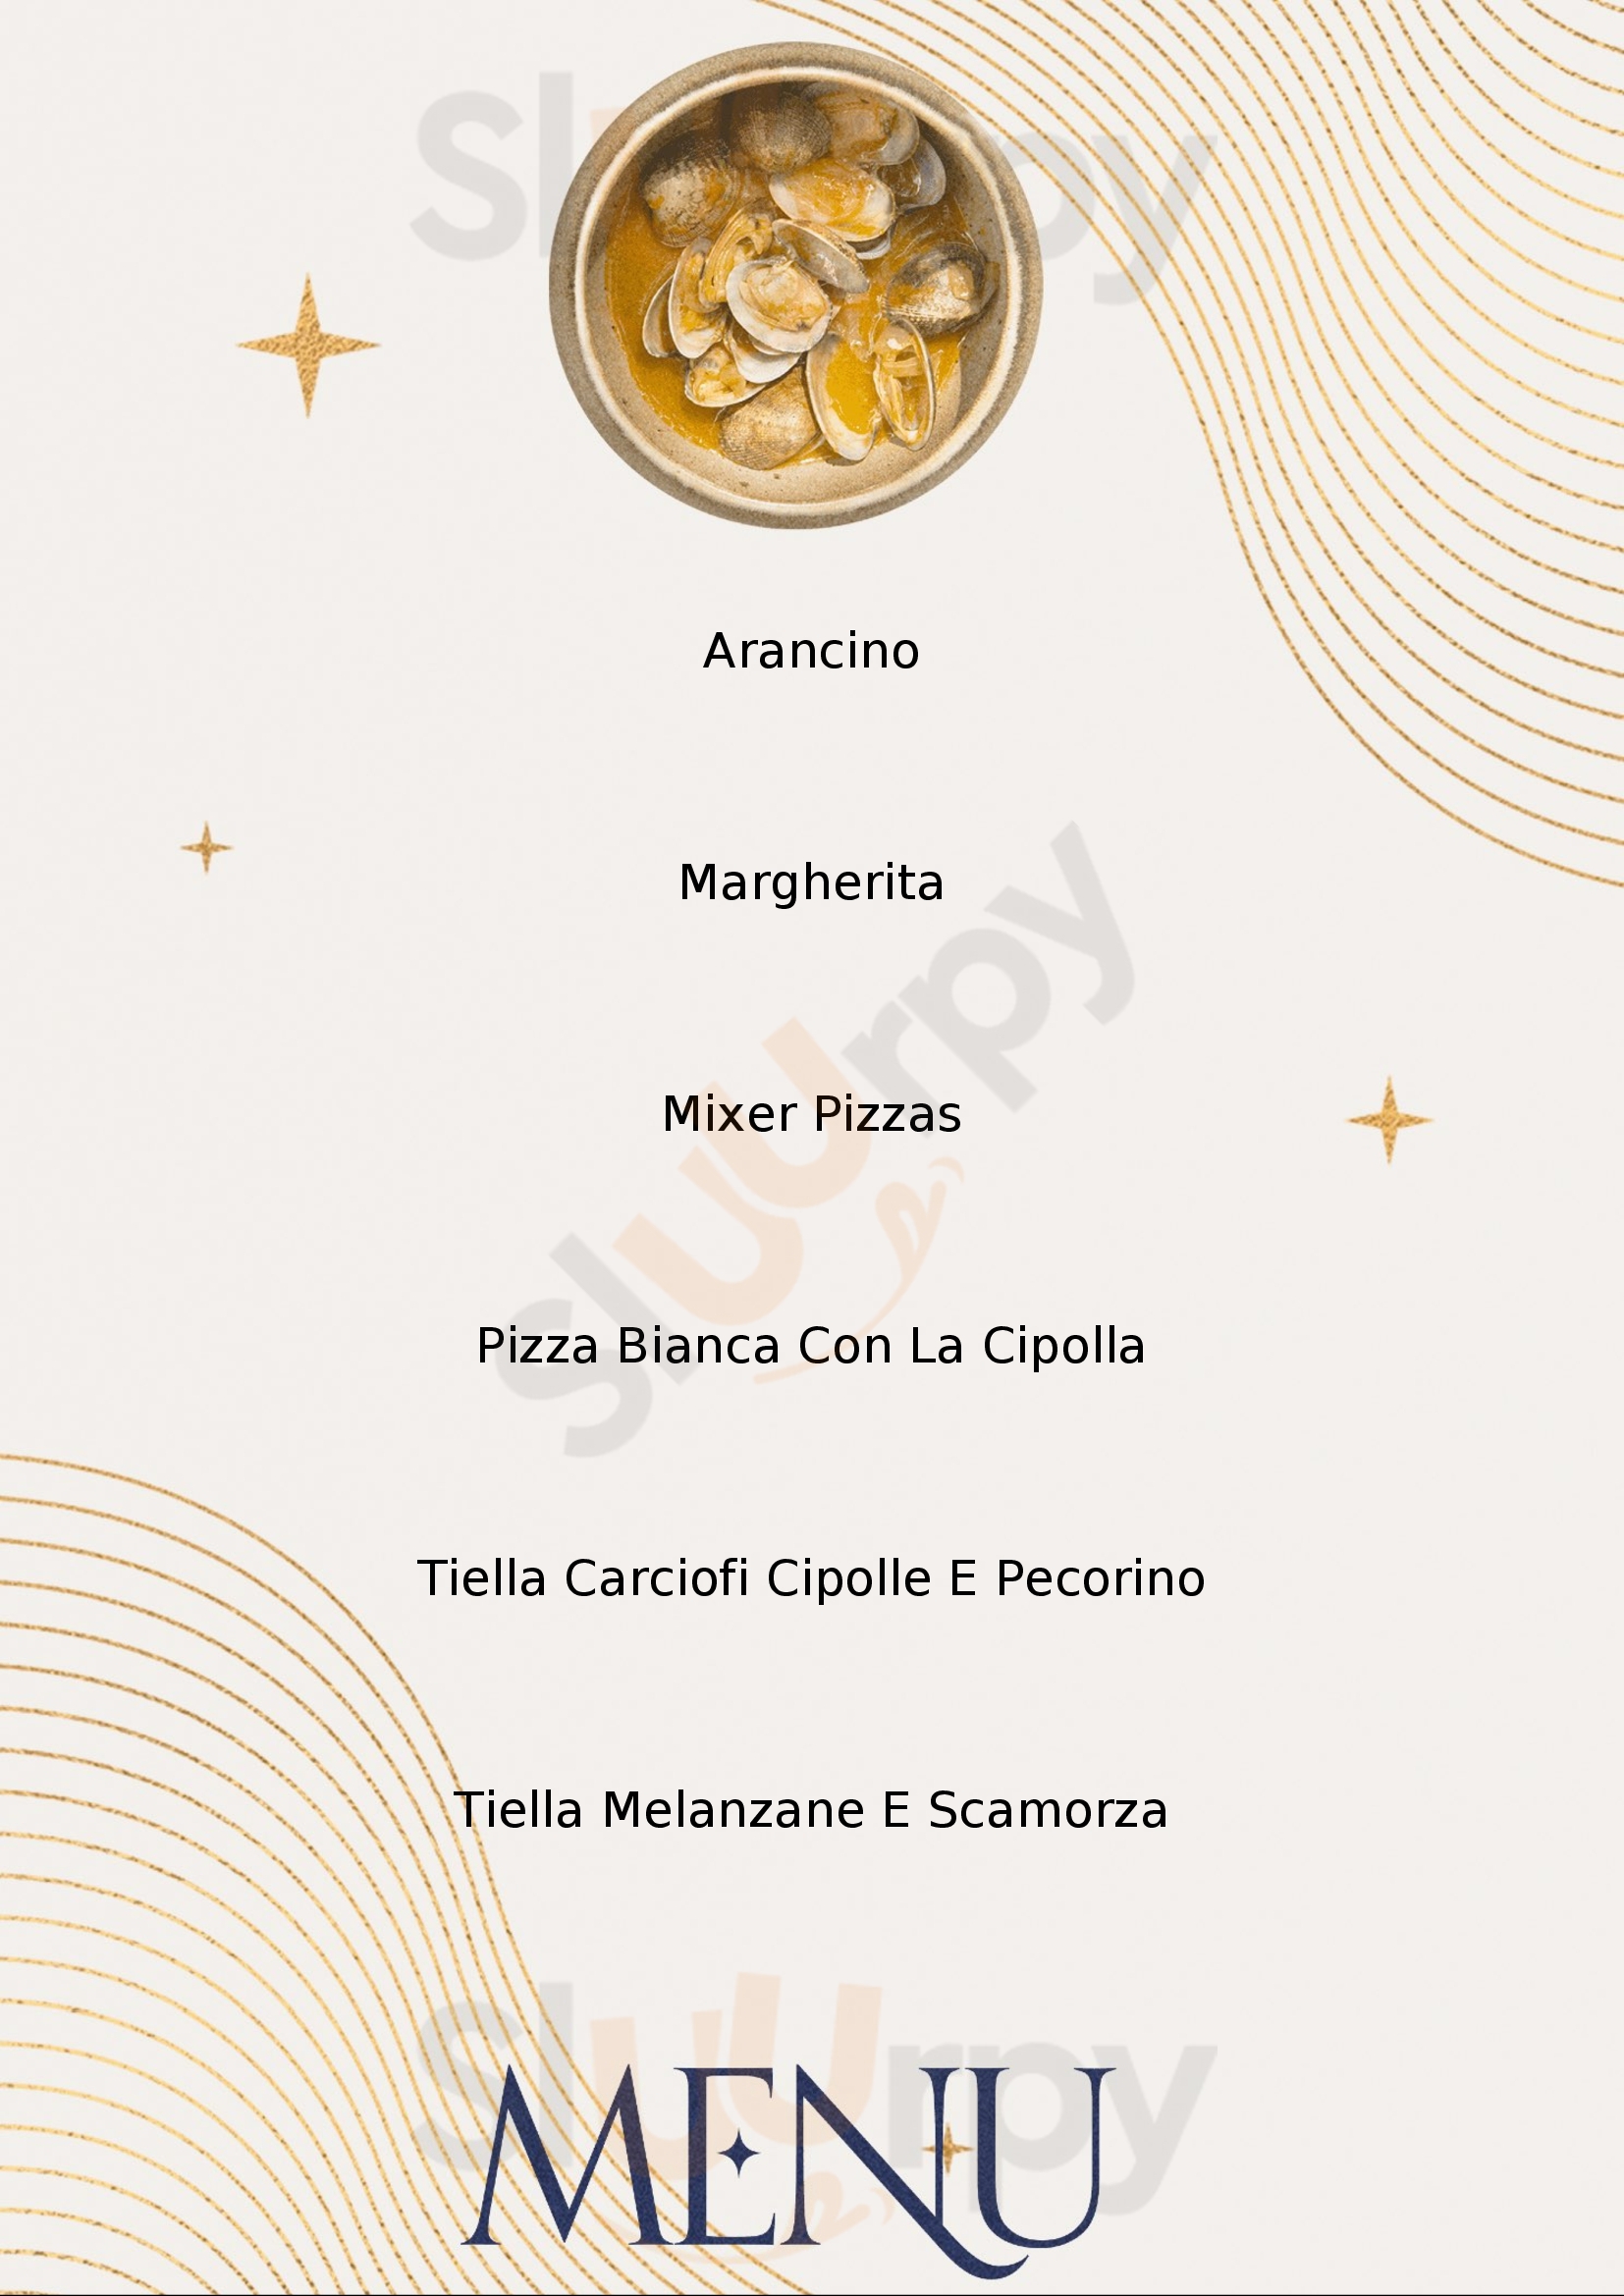 2000 Tielleria Pizzeria Gaeta menù 1 pagina